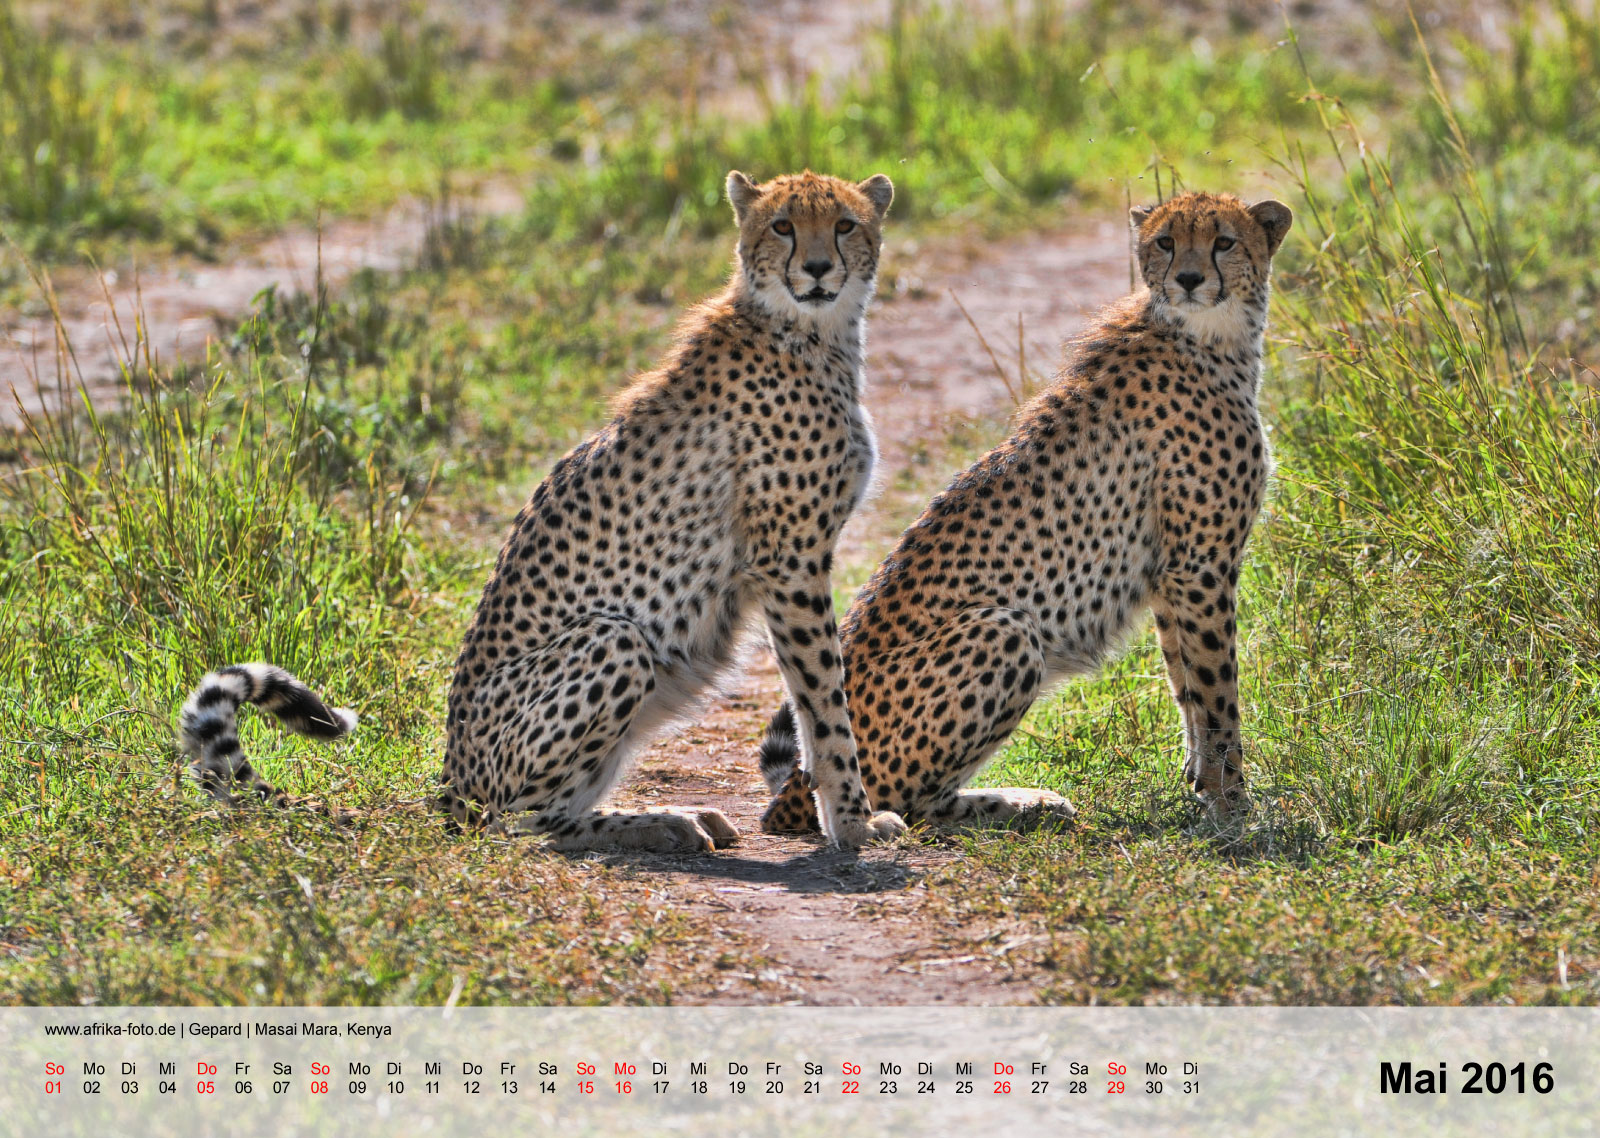 Gepard | Cheetah | Masai Mara, Kenya | Kalender 2016 - Mai